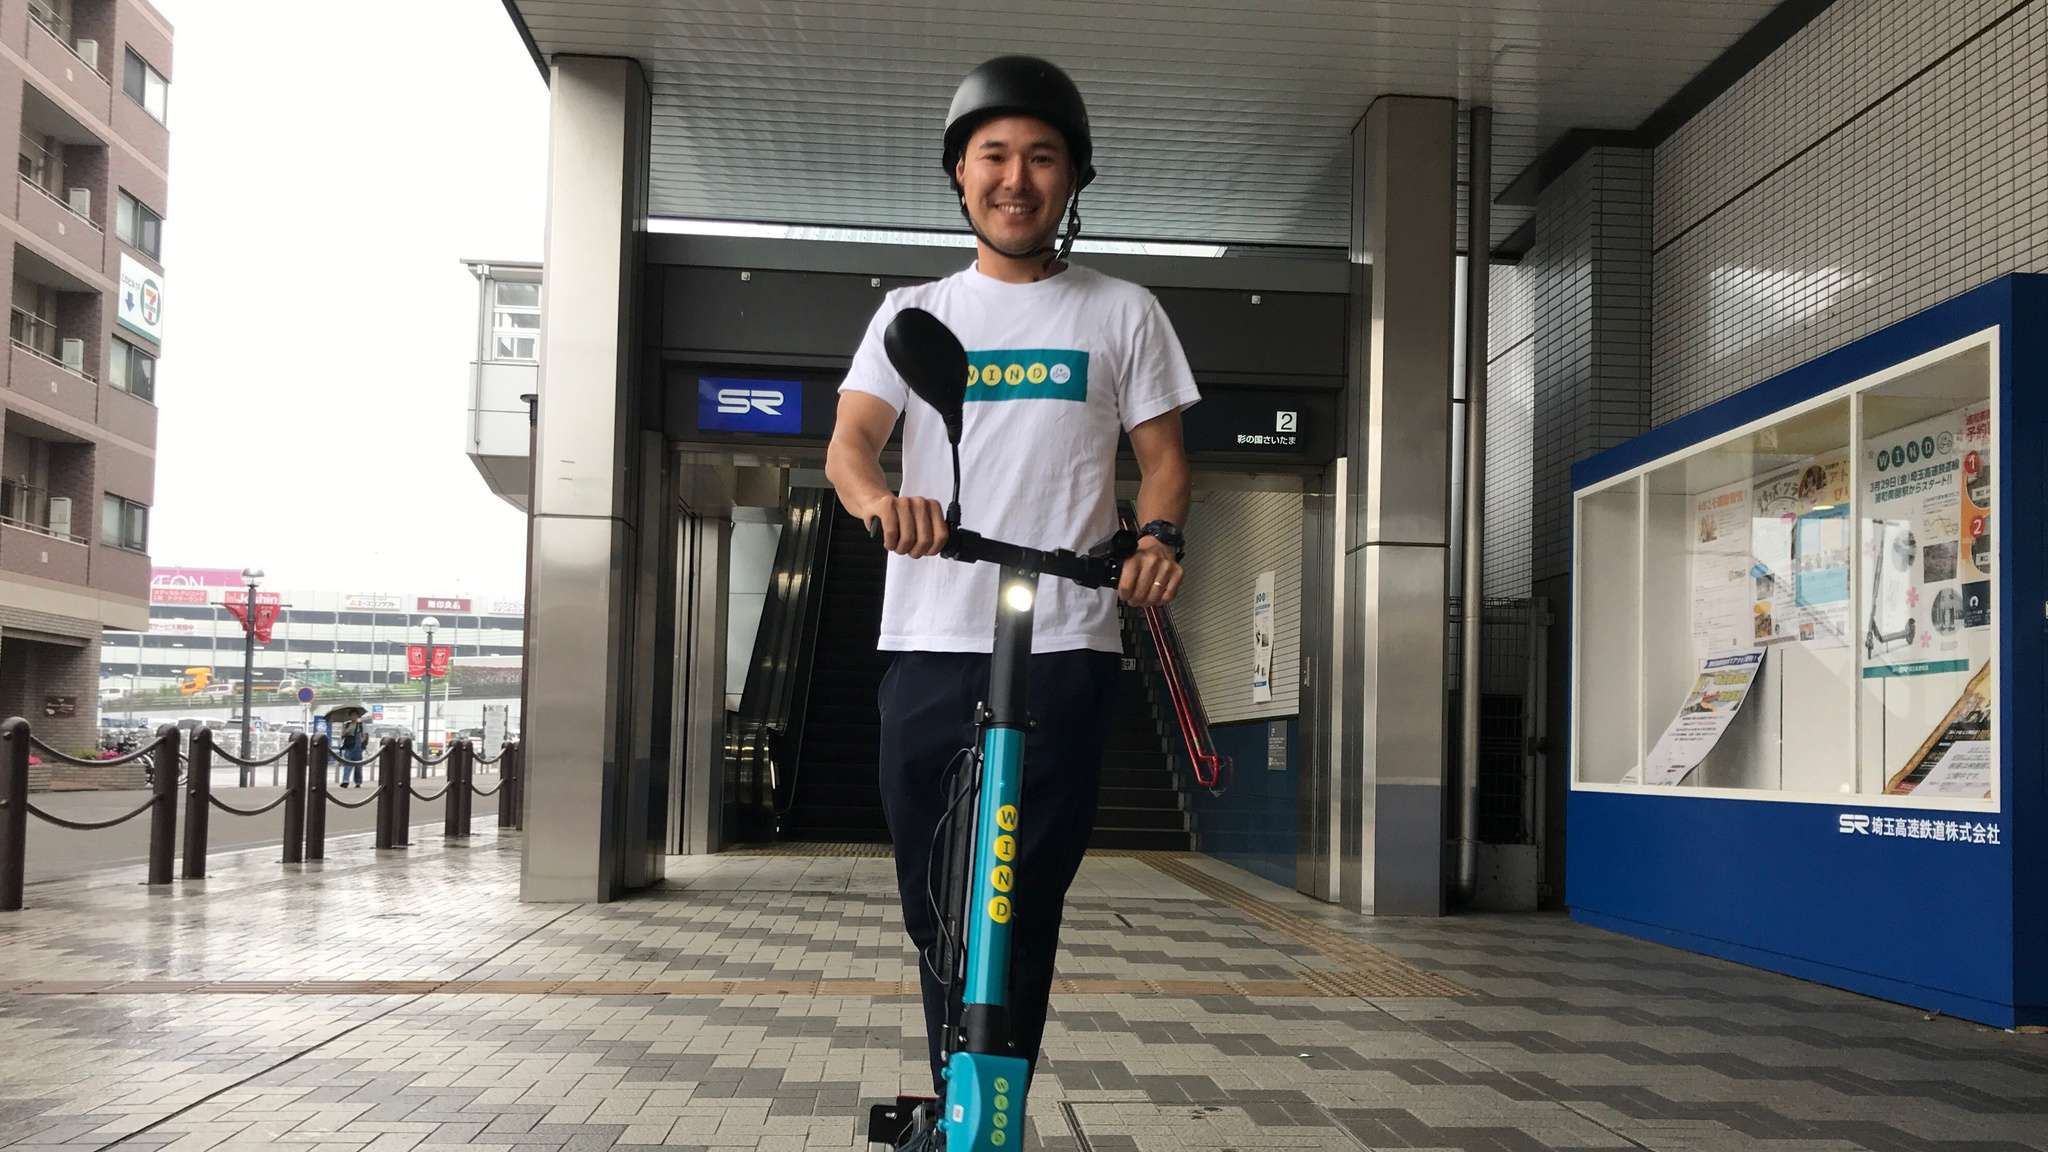 टोक्यो ओलंपिक्स में हाईटेक स्कूटर्स ले जाएंगे वहां, आप जाना चाहें जहां